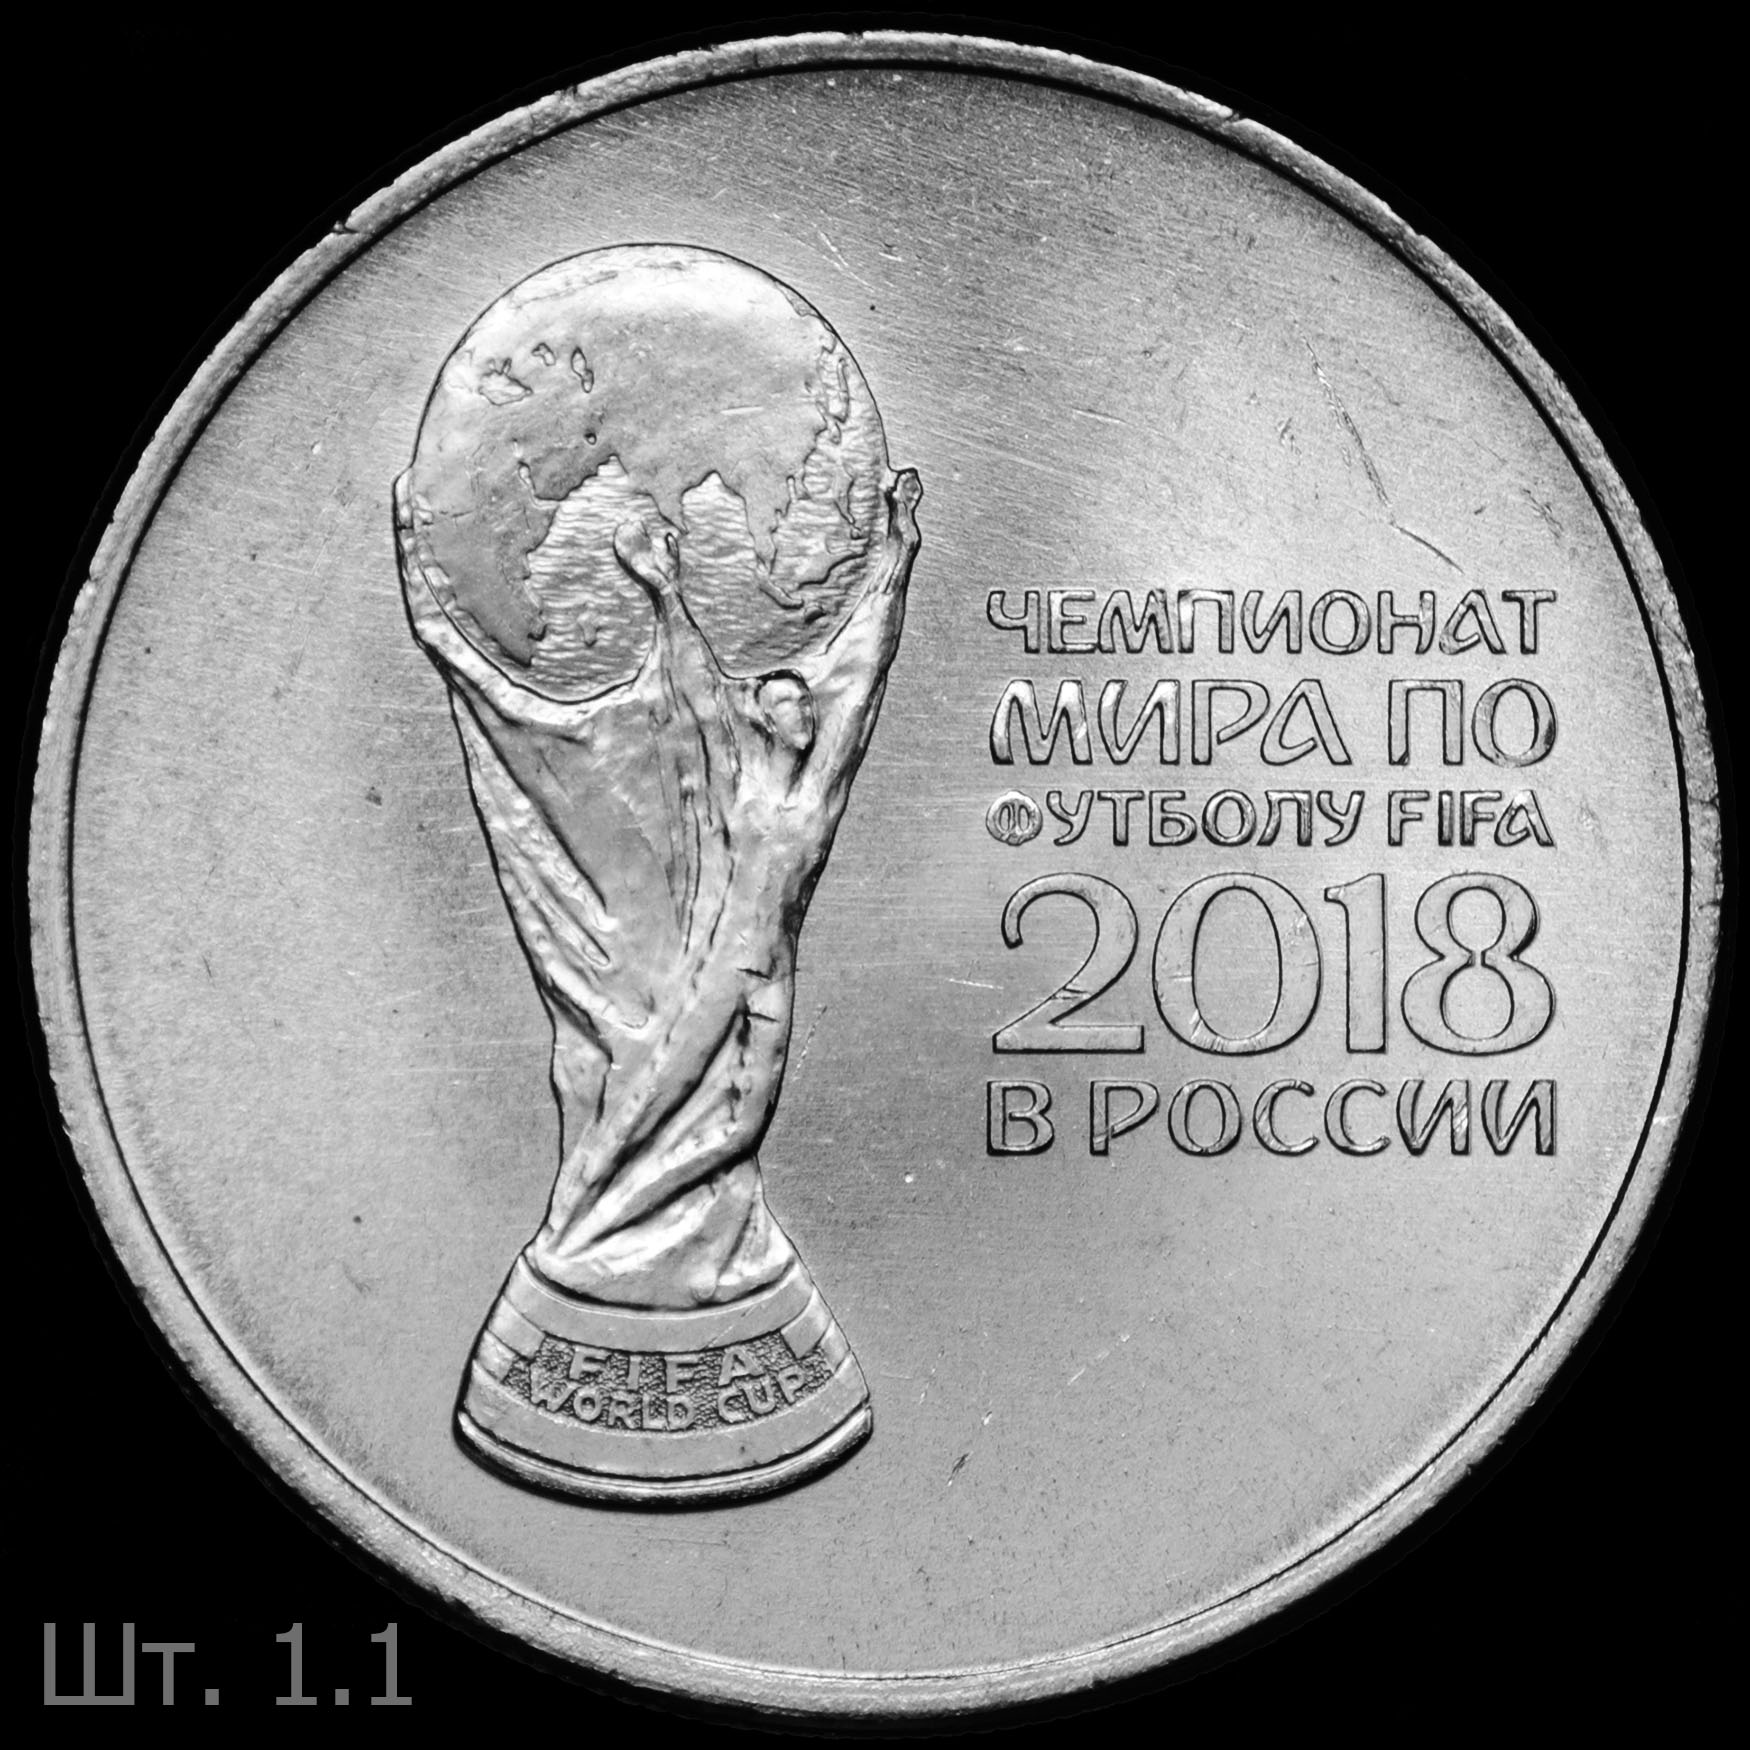 Монета 25 рублей ЧМ по футболу 2018 стоимость. Рассиский 25 рублей с Кубок рисунками.